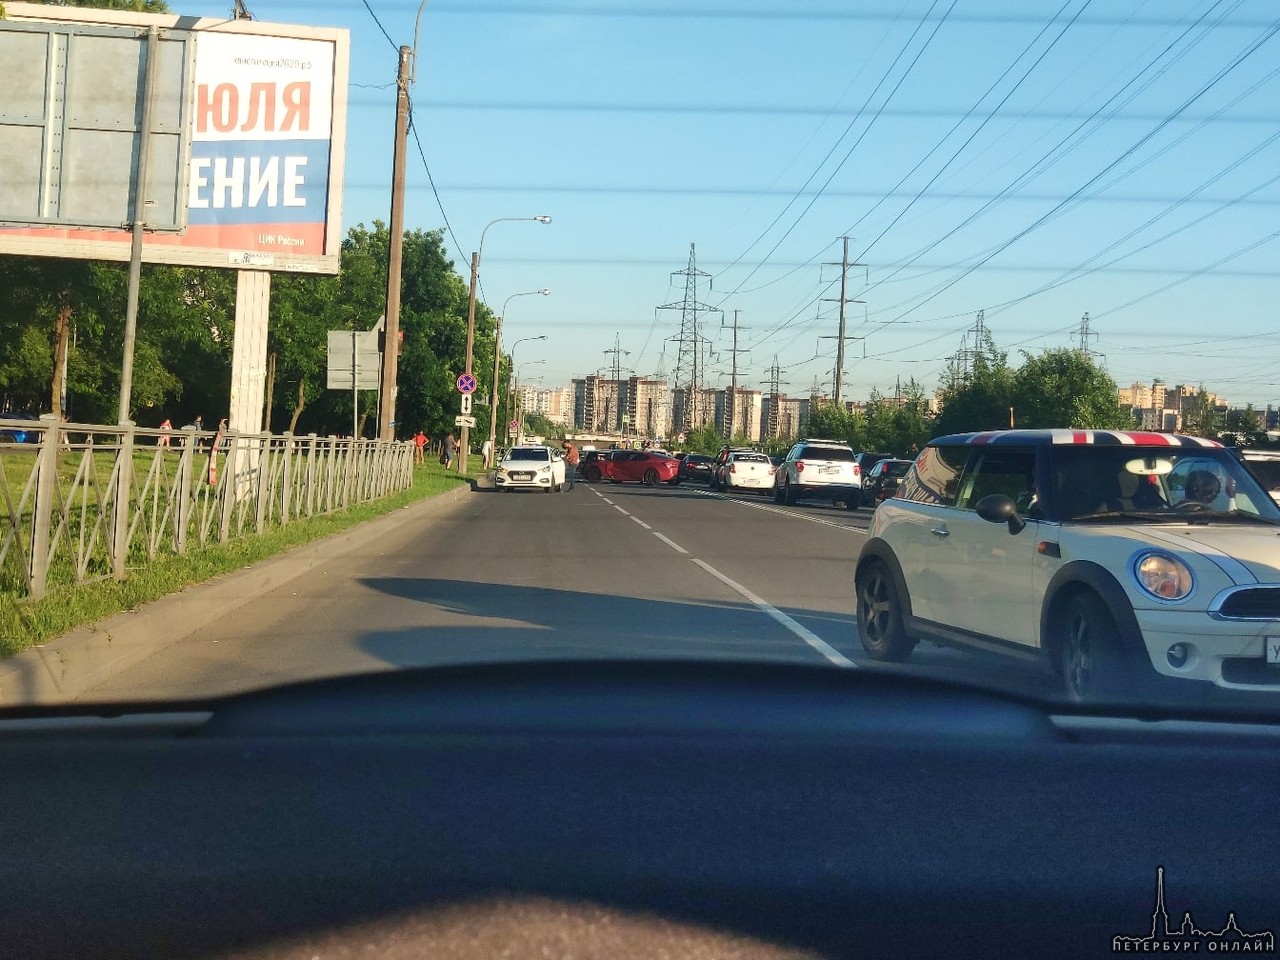 Красный спорт Honda открутился с перекрестка Косыгина по Передовиков, на большой скорости вошёл в ле...